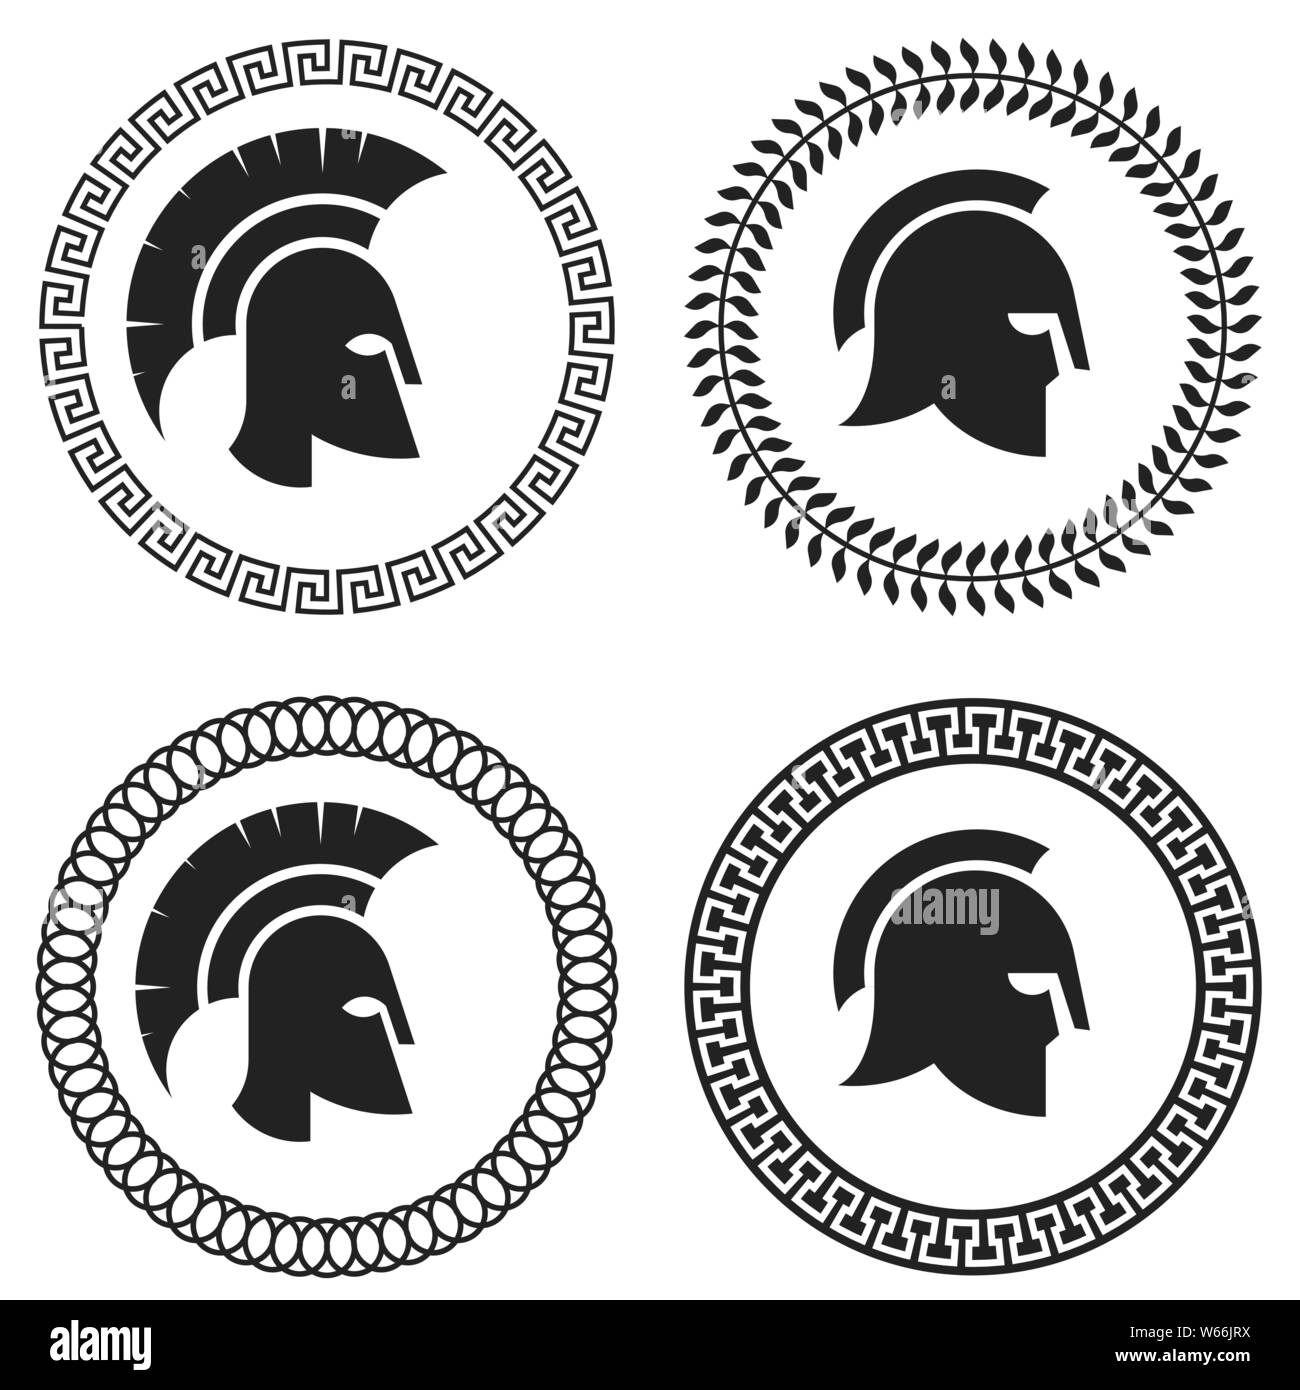 Casco romano Imágenes de stock en blanco y negro - Alamy